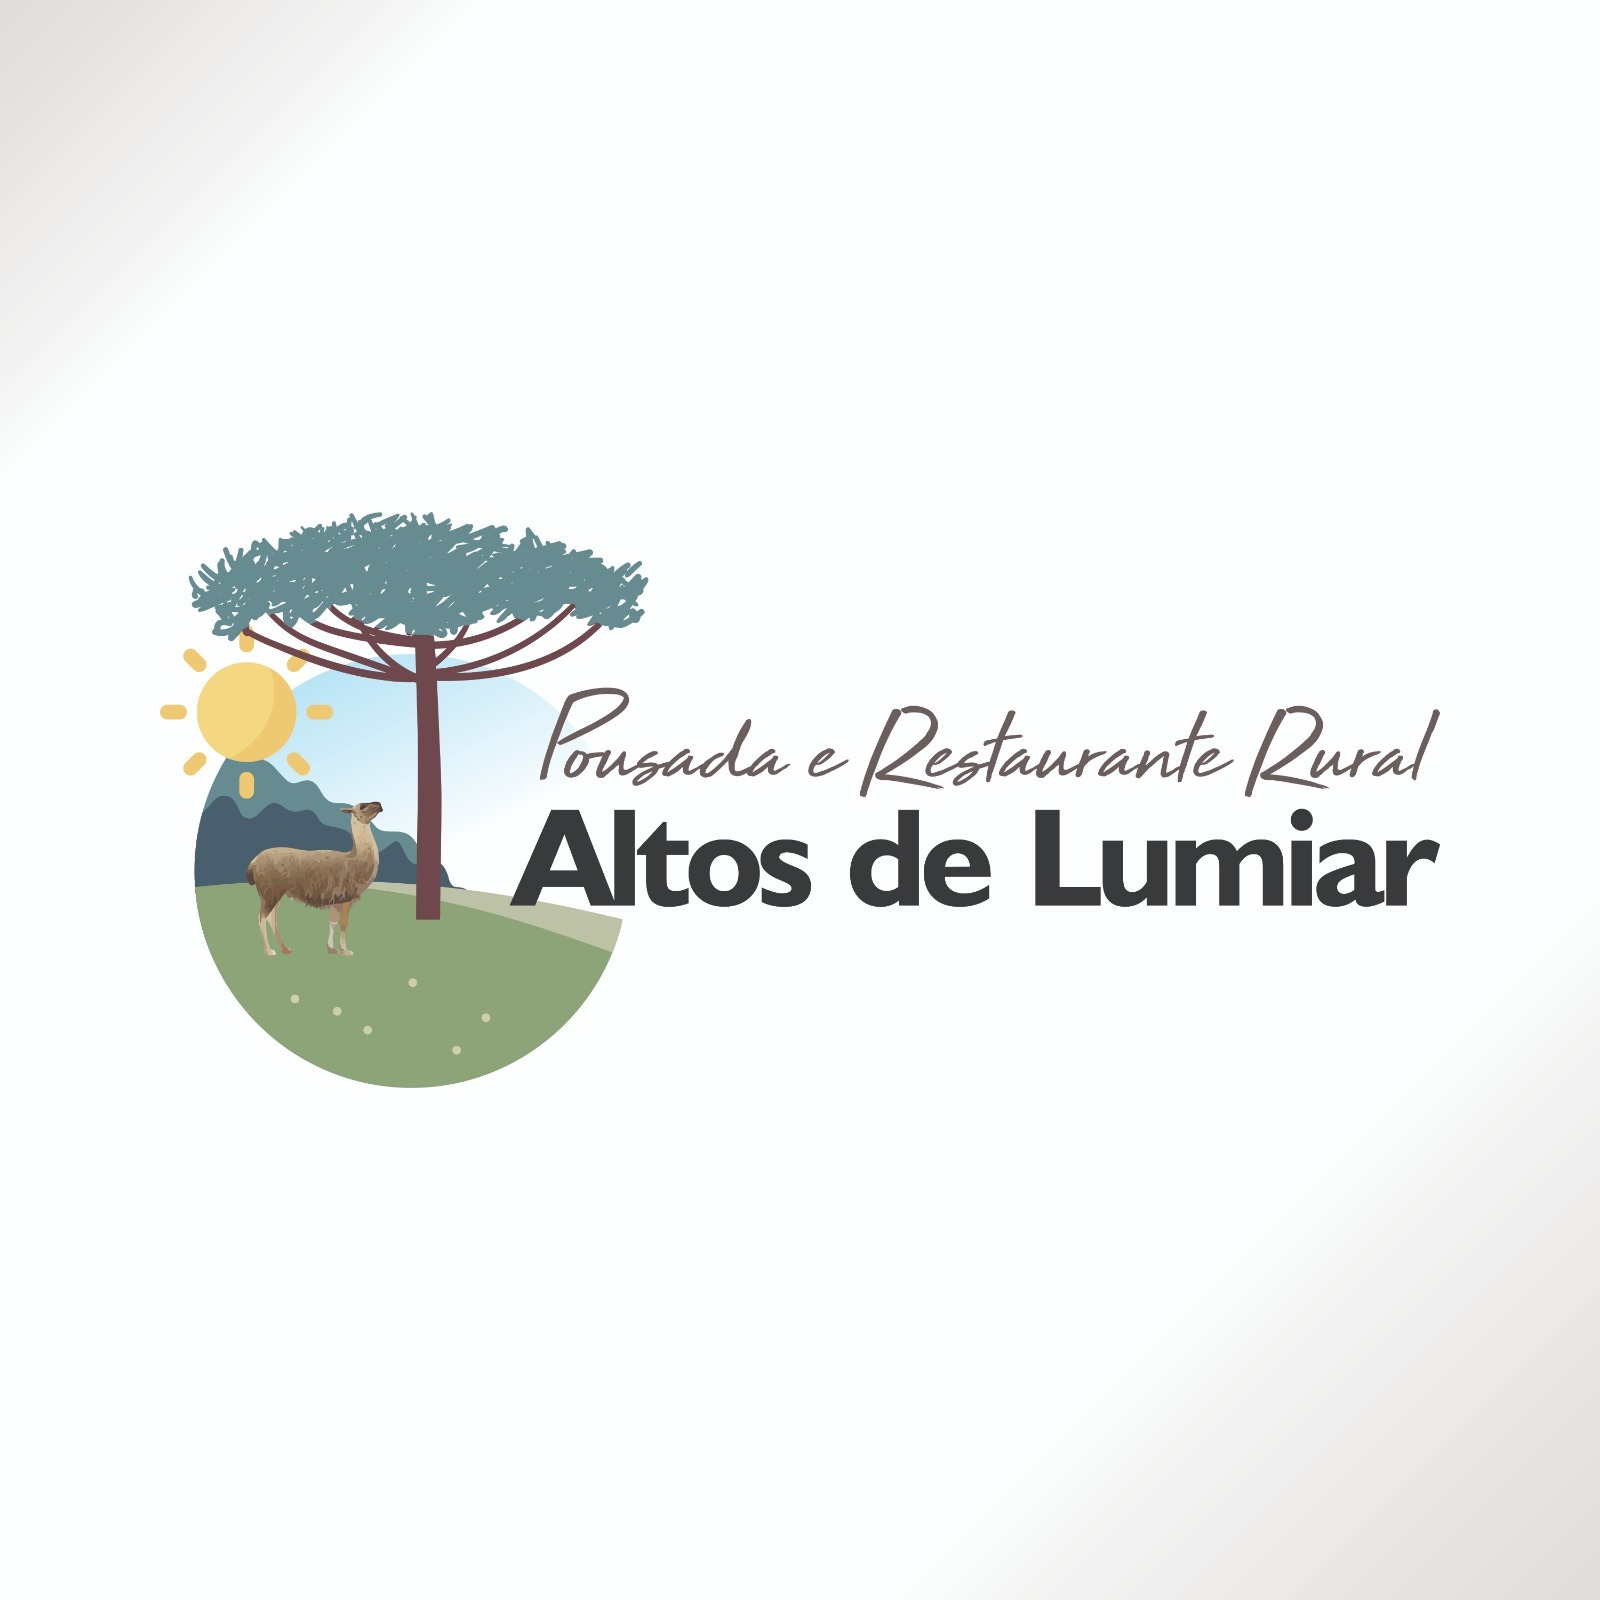 Pousada e Restaurante Rural Altos de Lumiar